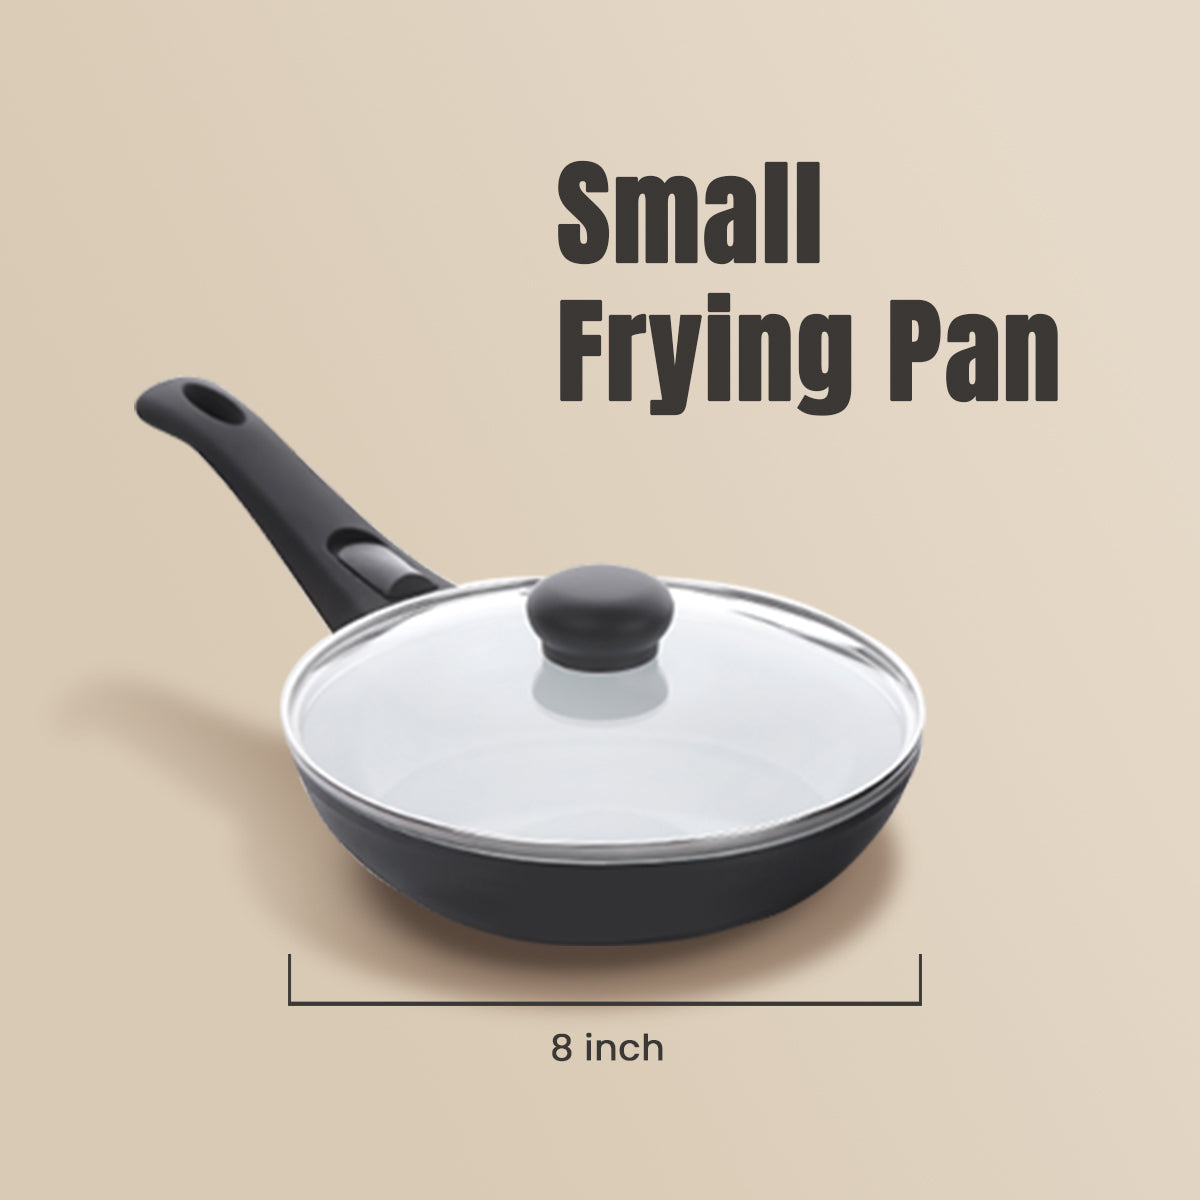 3 x P600 Cookware Frying Pan Set